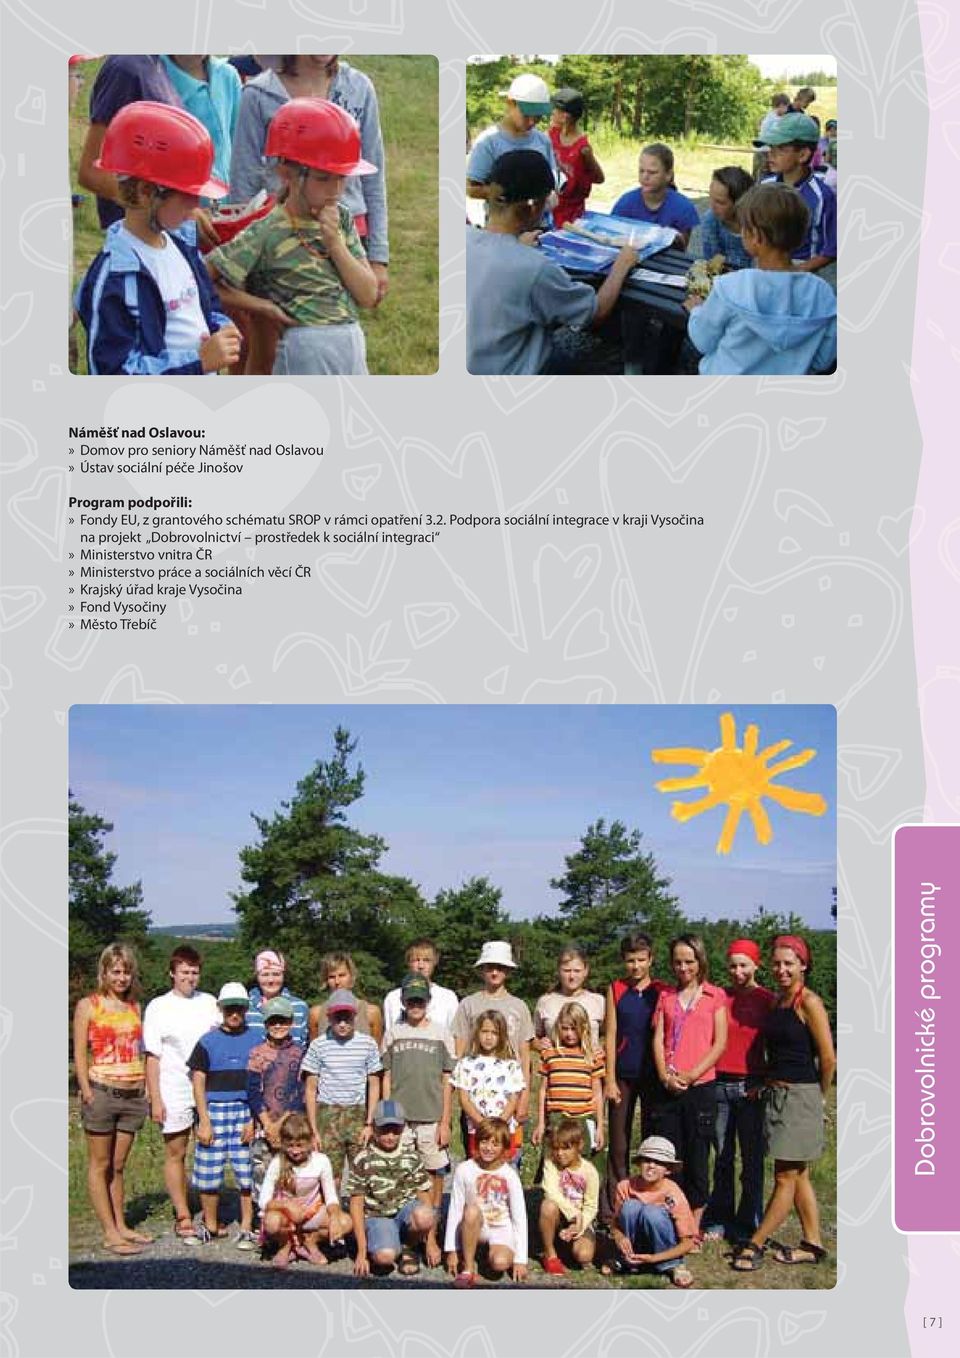 Podpora sociální integrace v kraji Vysočina na projekt Dobrovolnictví prostředek k sociální integraci»